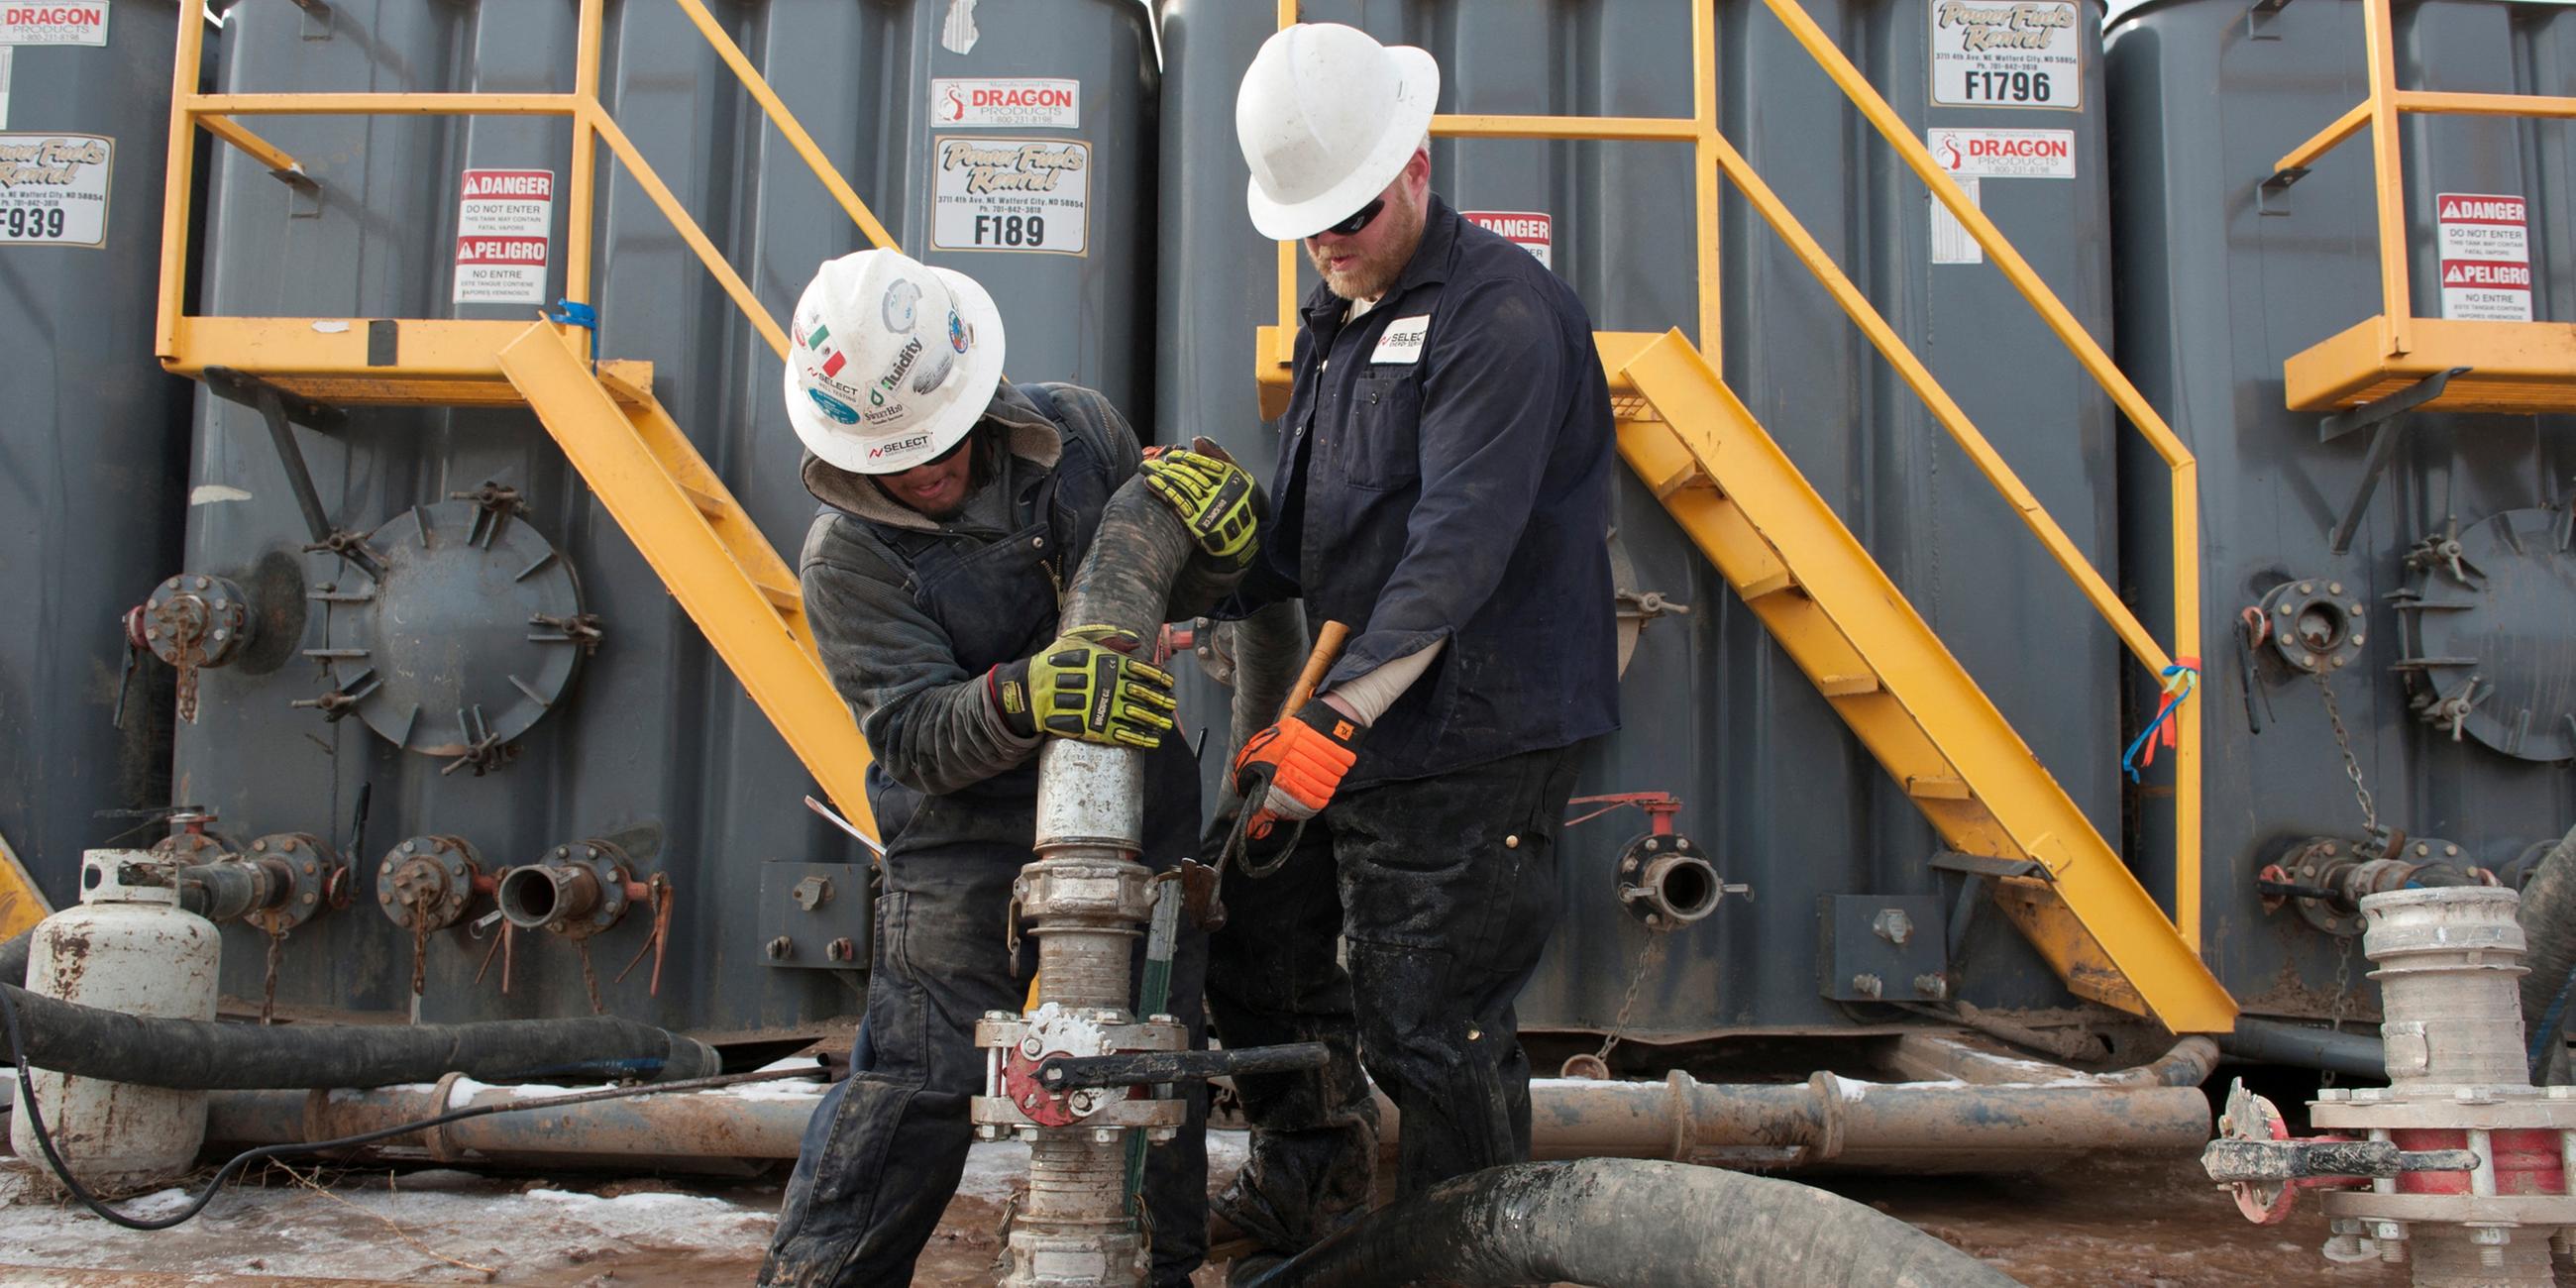 Arbeiter an einem Fracking-Standort in North Dakota